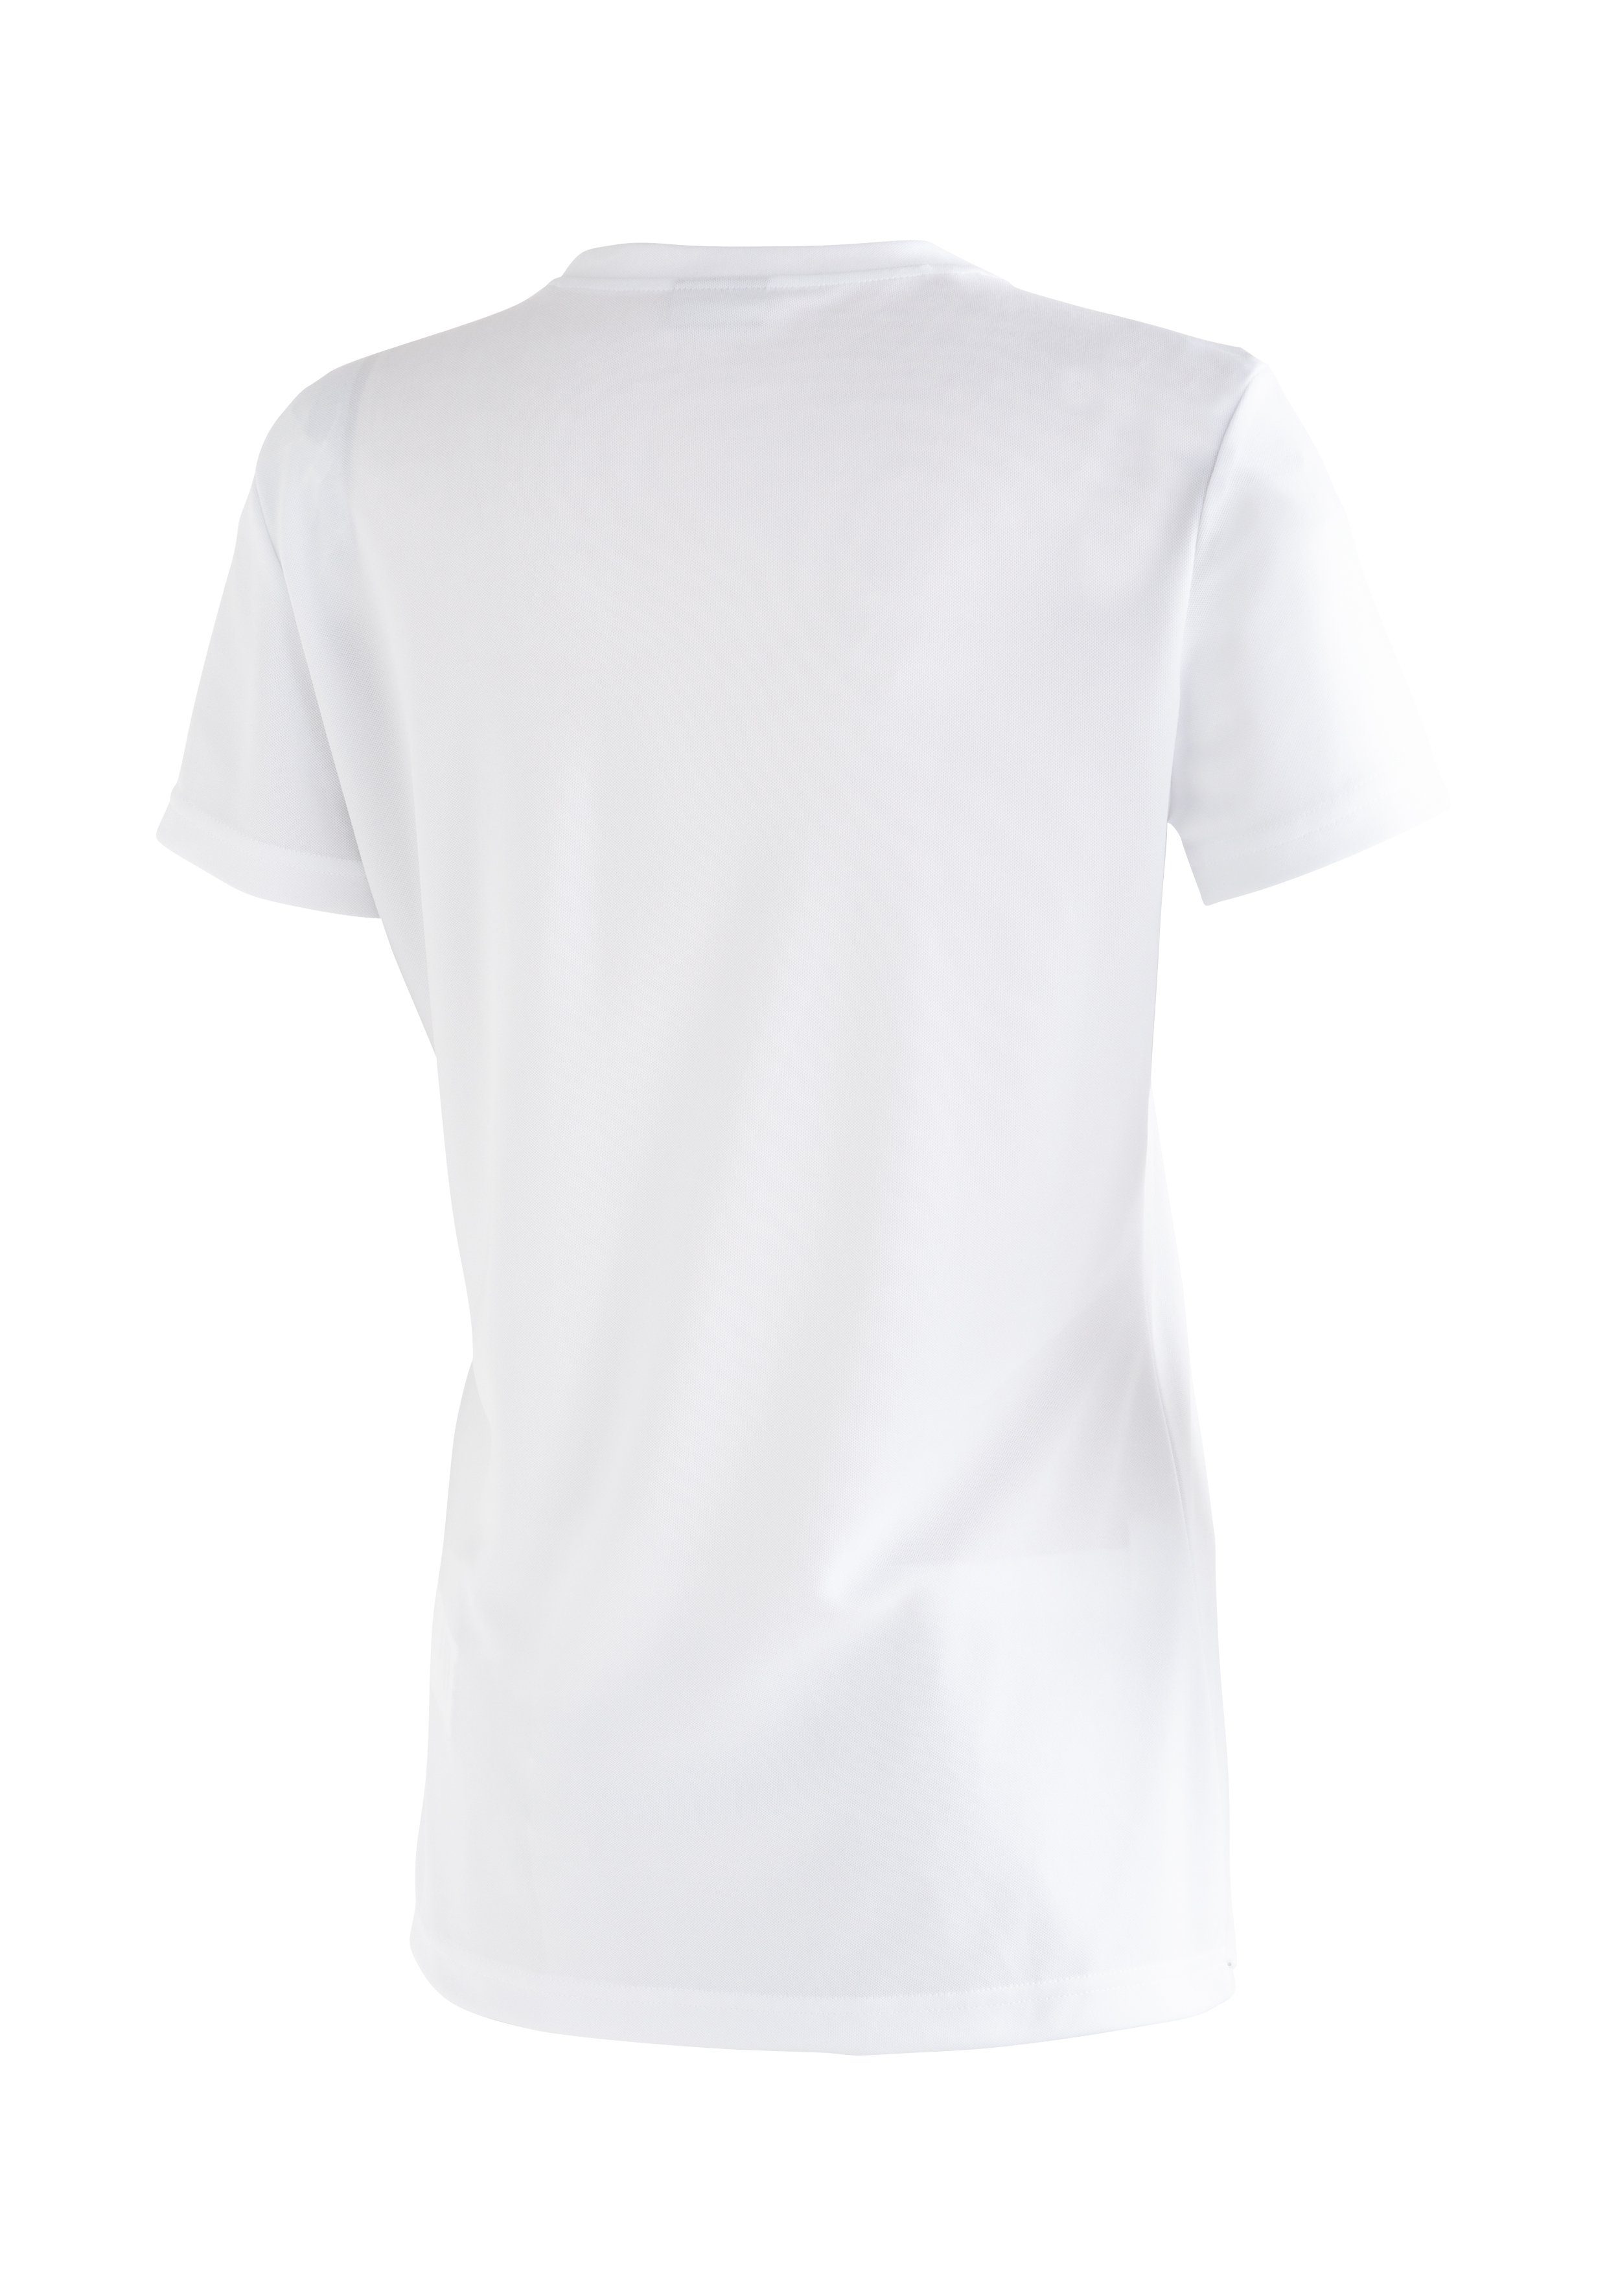 Sports Passformstabilität Funktionsshirt Print Waltraut Funktional Maier vielseitiges weiß T-Shirt mit hoher